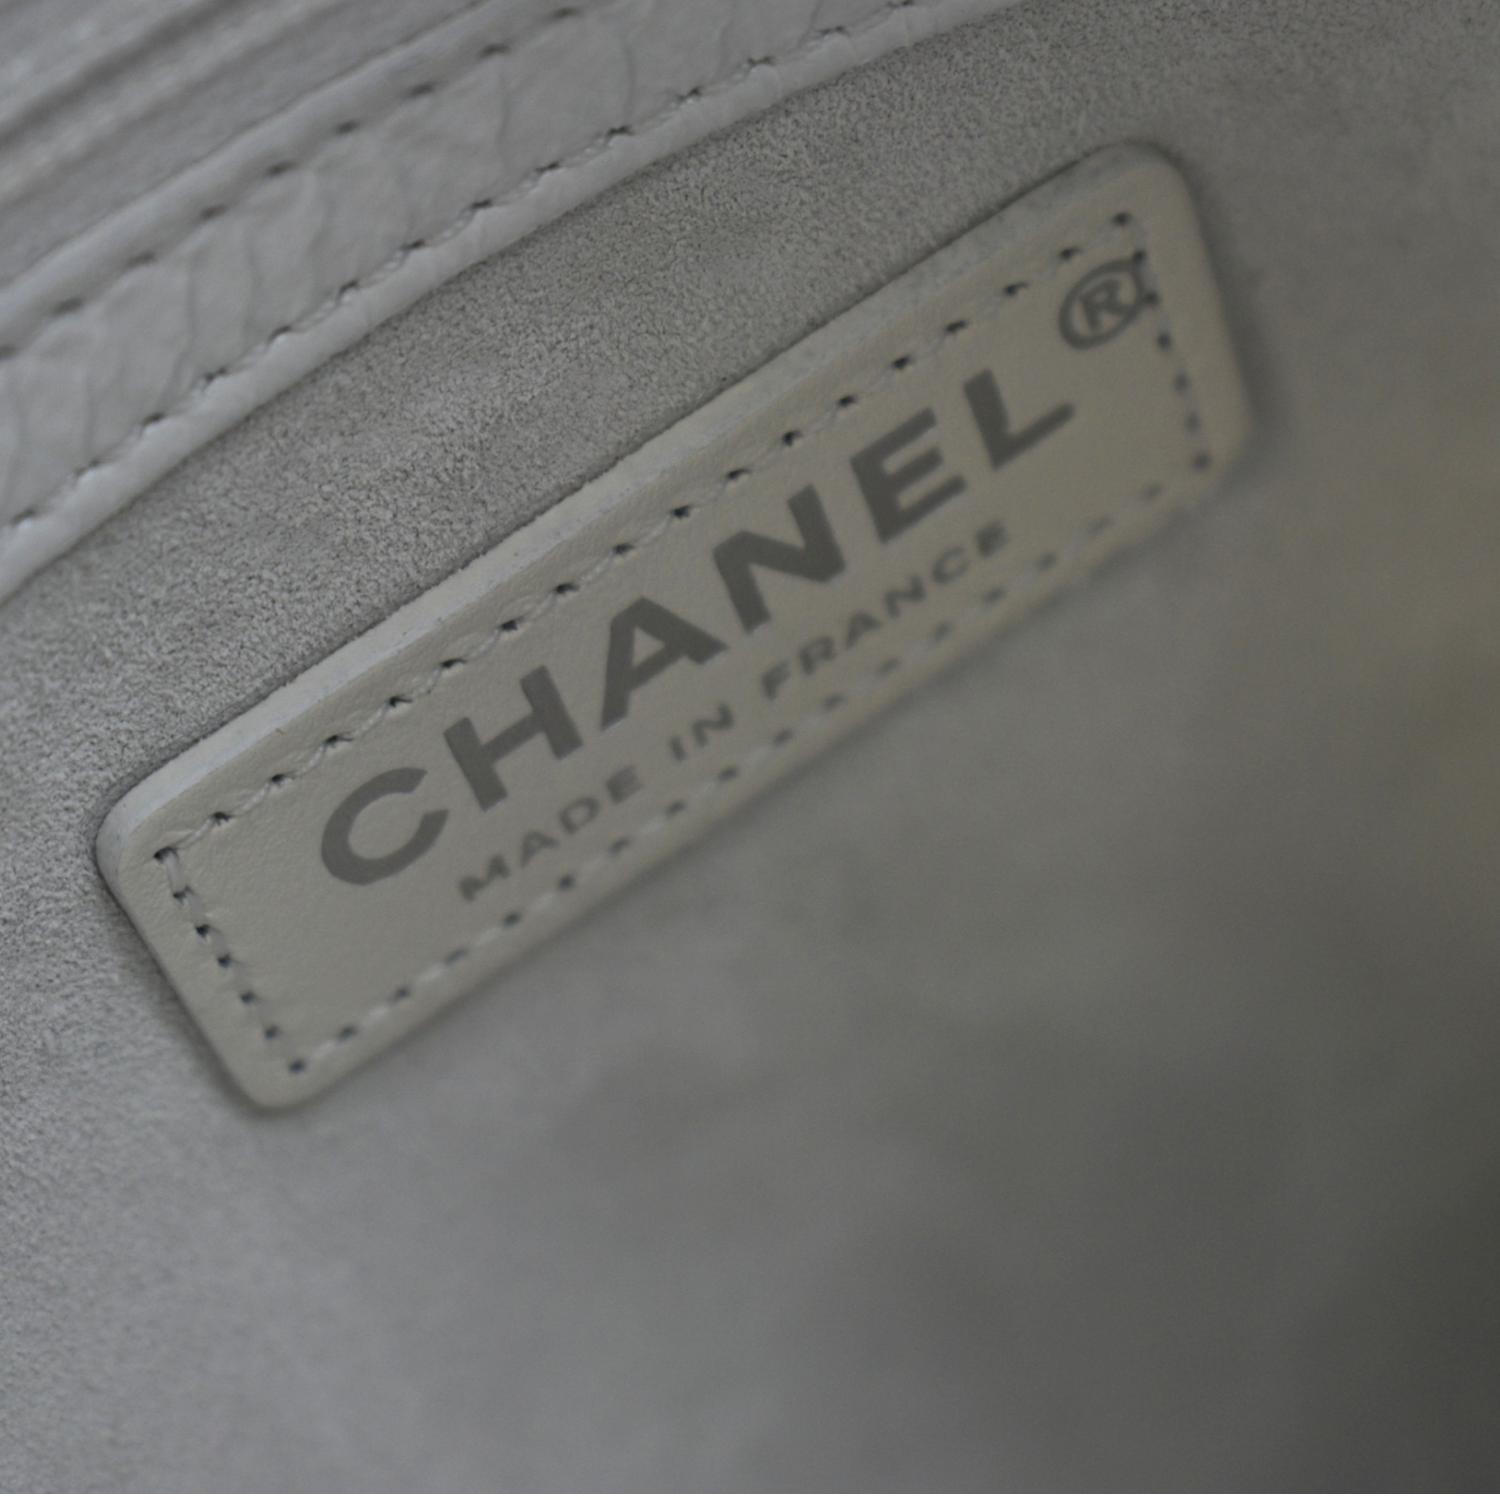 Chanel Droplet Hobo Bag